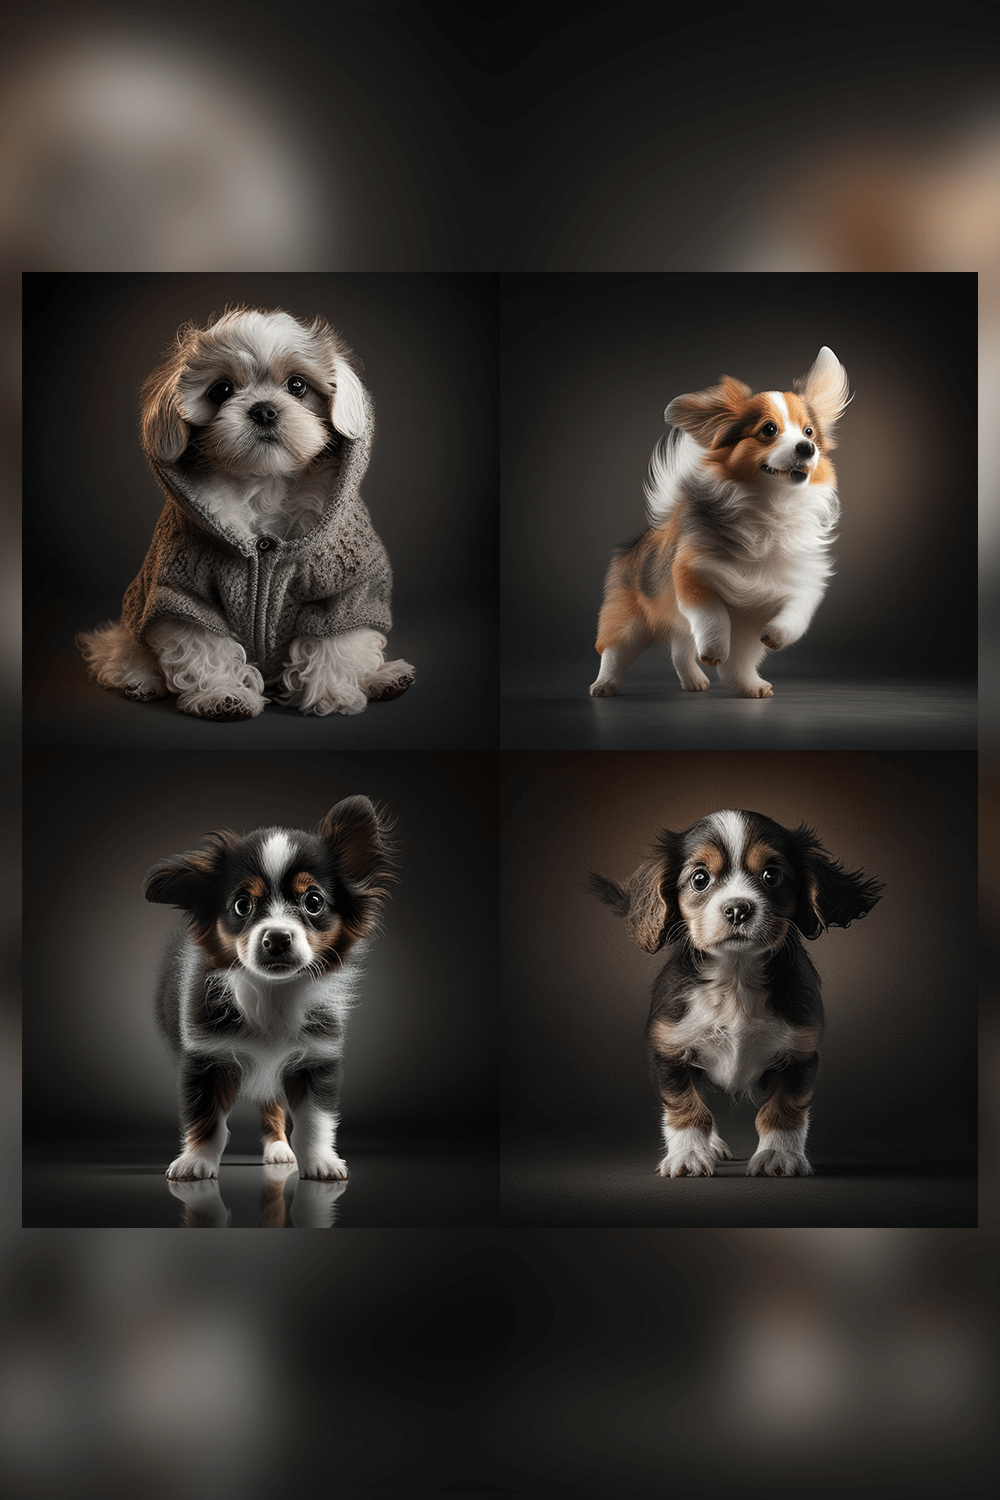 free cute dog stock photo bundle pinterest image